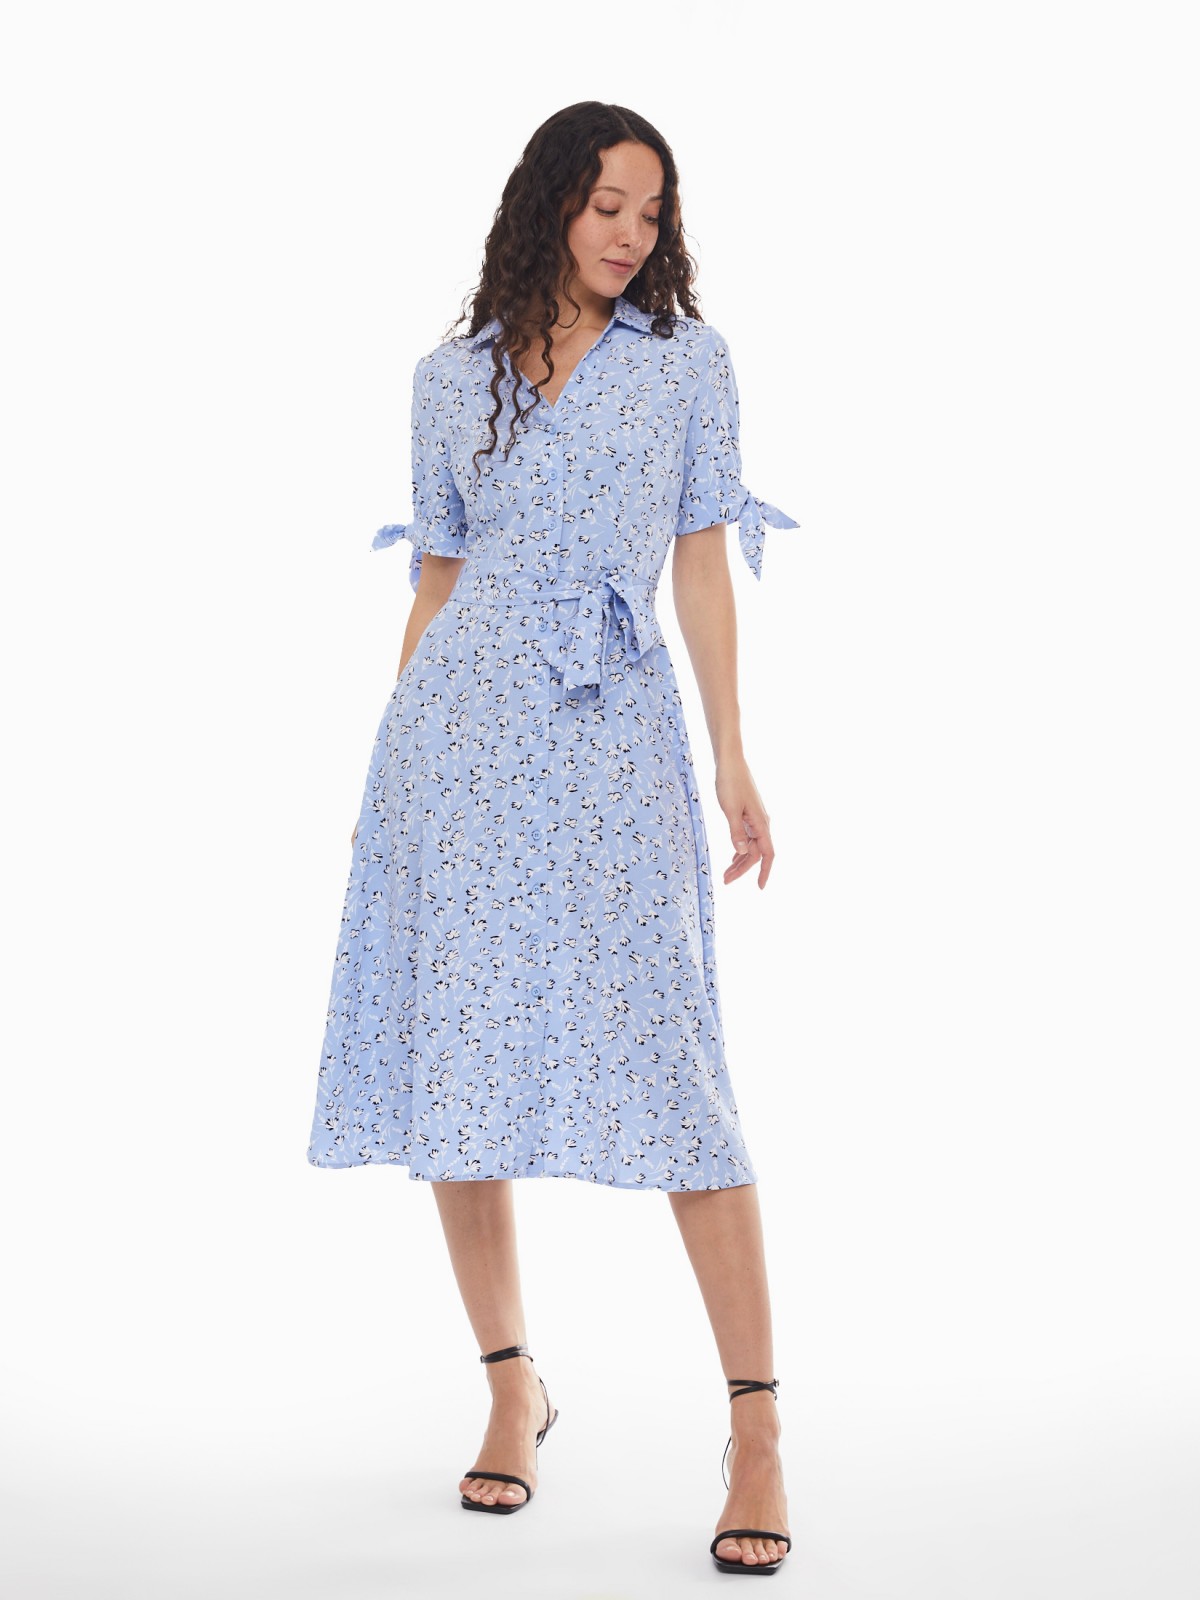 Платье-рубашка с поясом и акцентными короткими рукавами zolla 024138240412, цвет светло-голубой, размер XS - фото 2